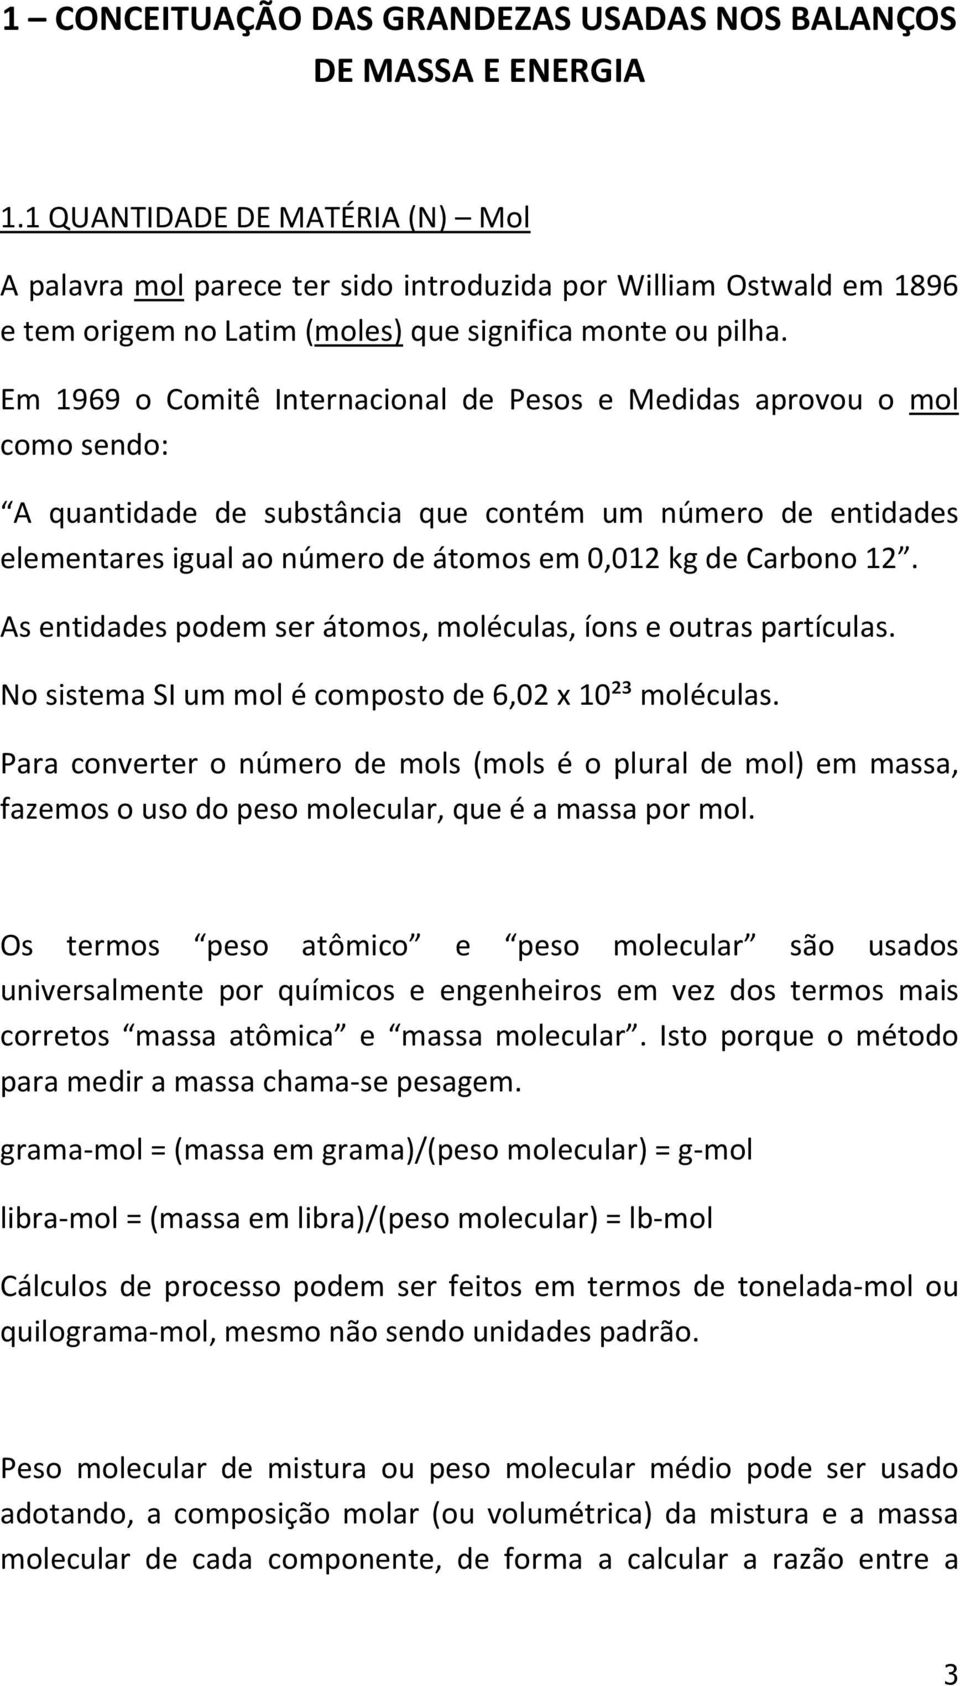 Em 1969 o Comitê Internacional de Pesos e Medidas aprovou o mol como sendo: A quantidade de substância que contém um número de entidades elementares igual ao número de átomos em 0,012 kg de Carbono